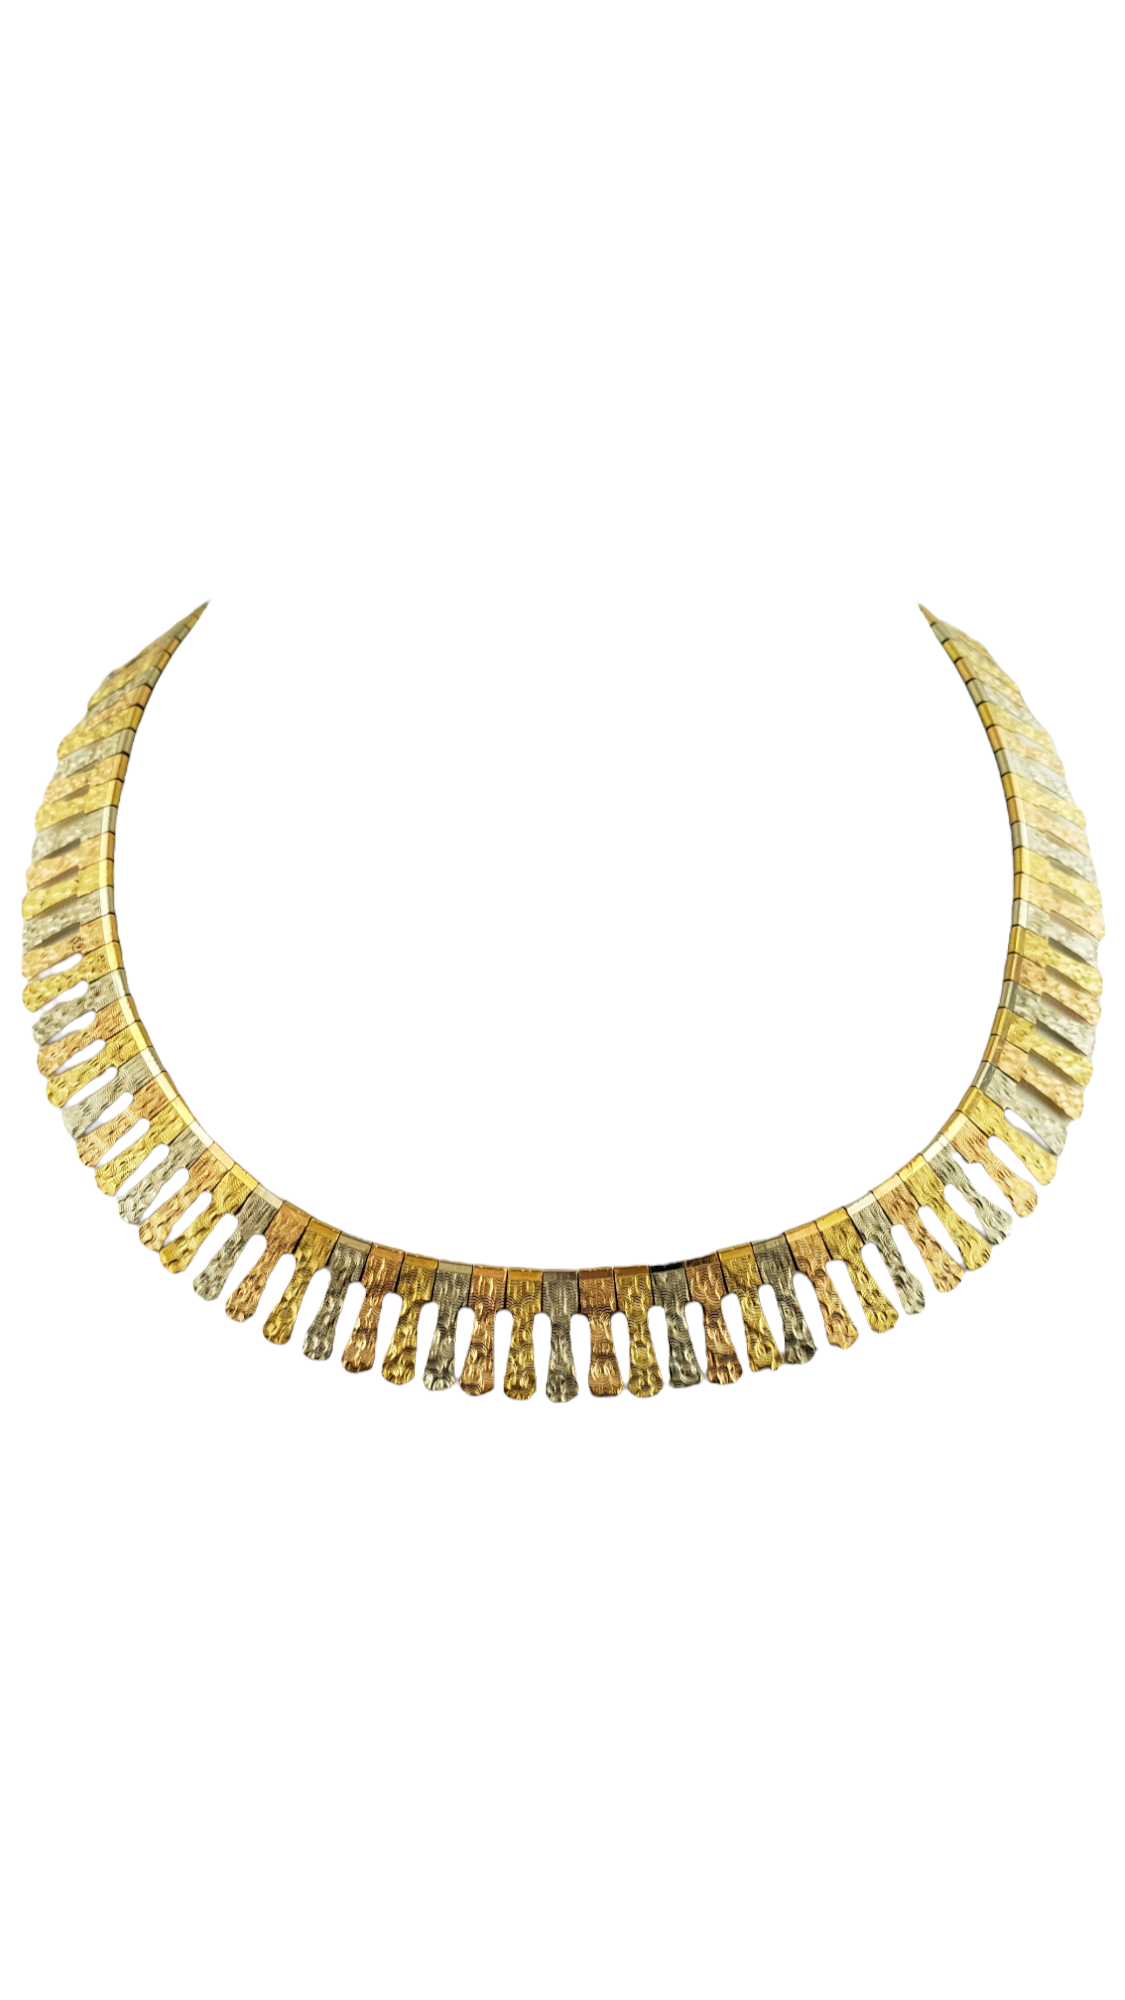 18k Tri-Color Gold Woman's Necklace